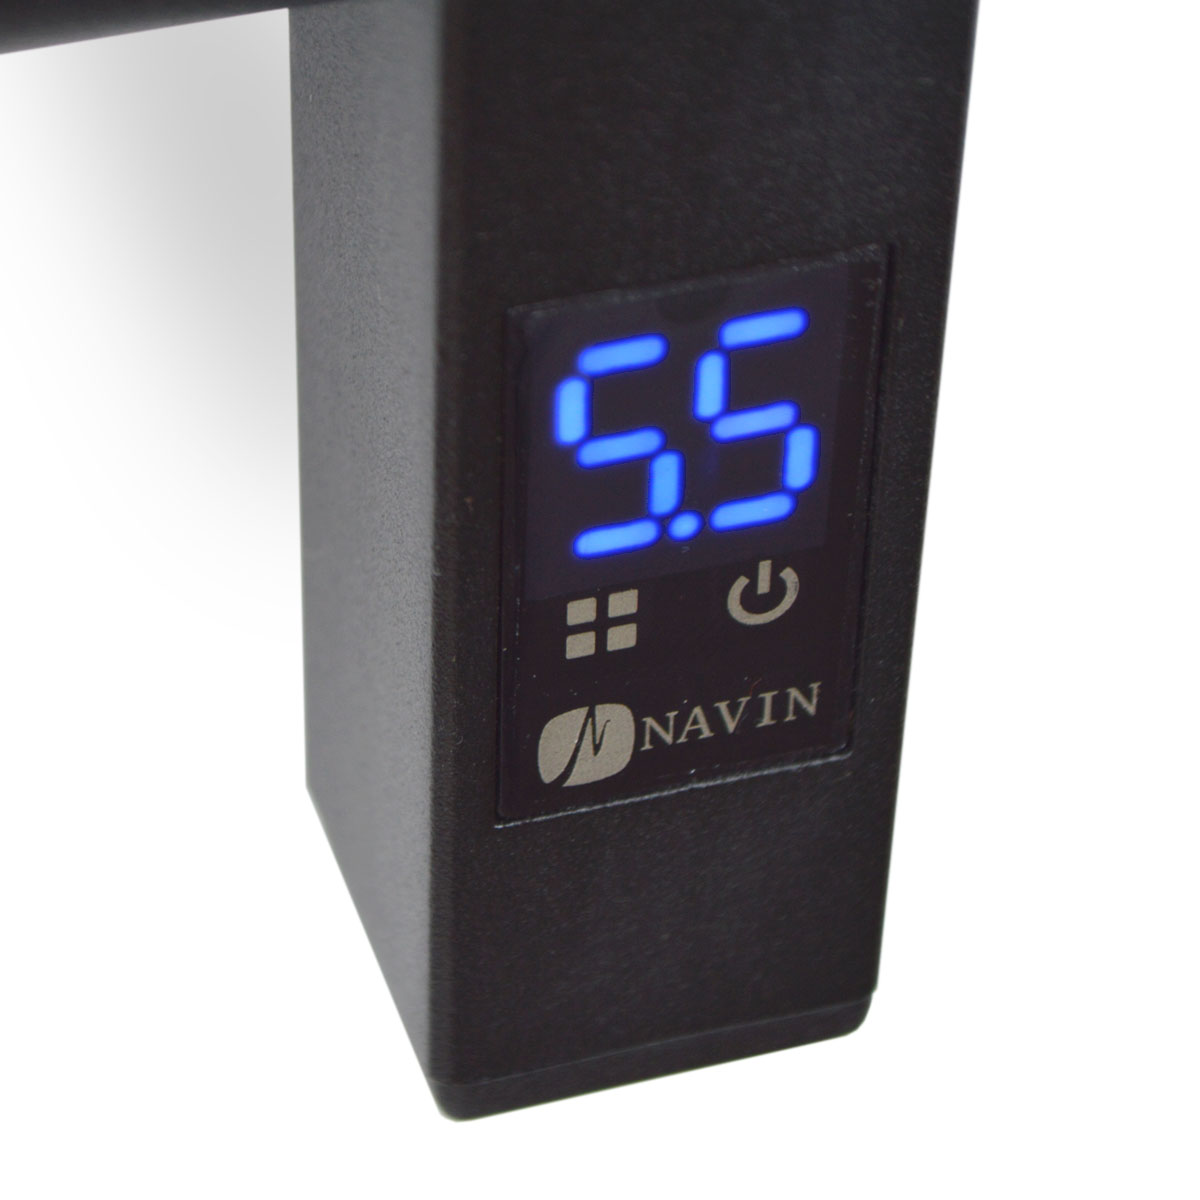 продаём Navin Классик Квадро 500х800 Sensor (12-216153-5080) в Украине - фото 4